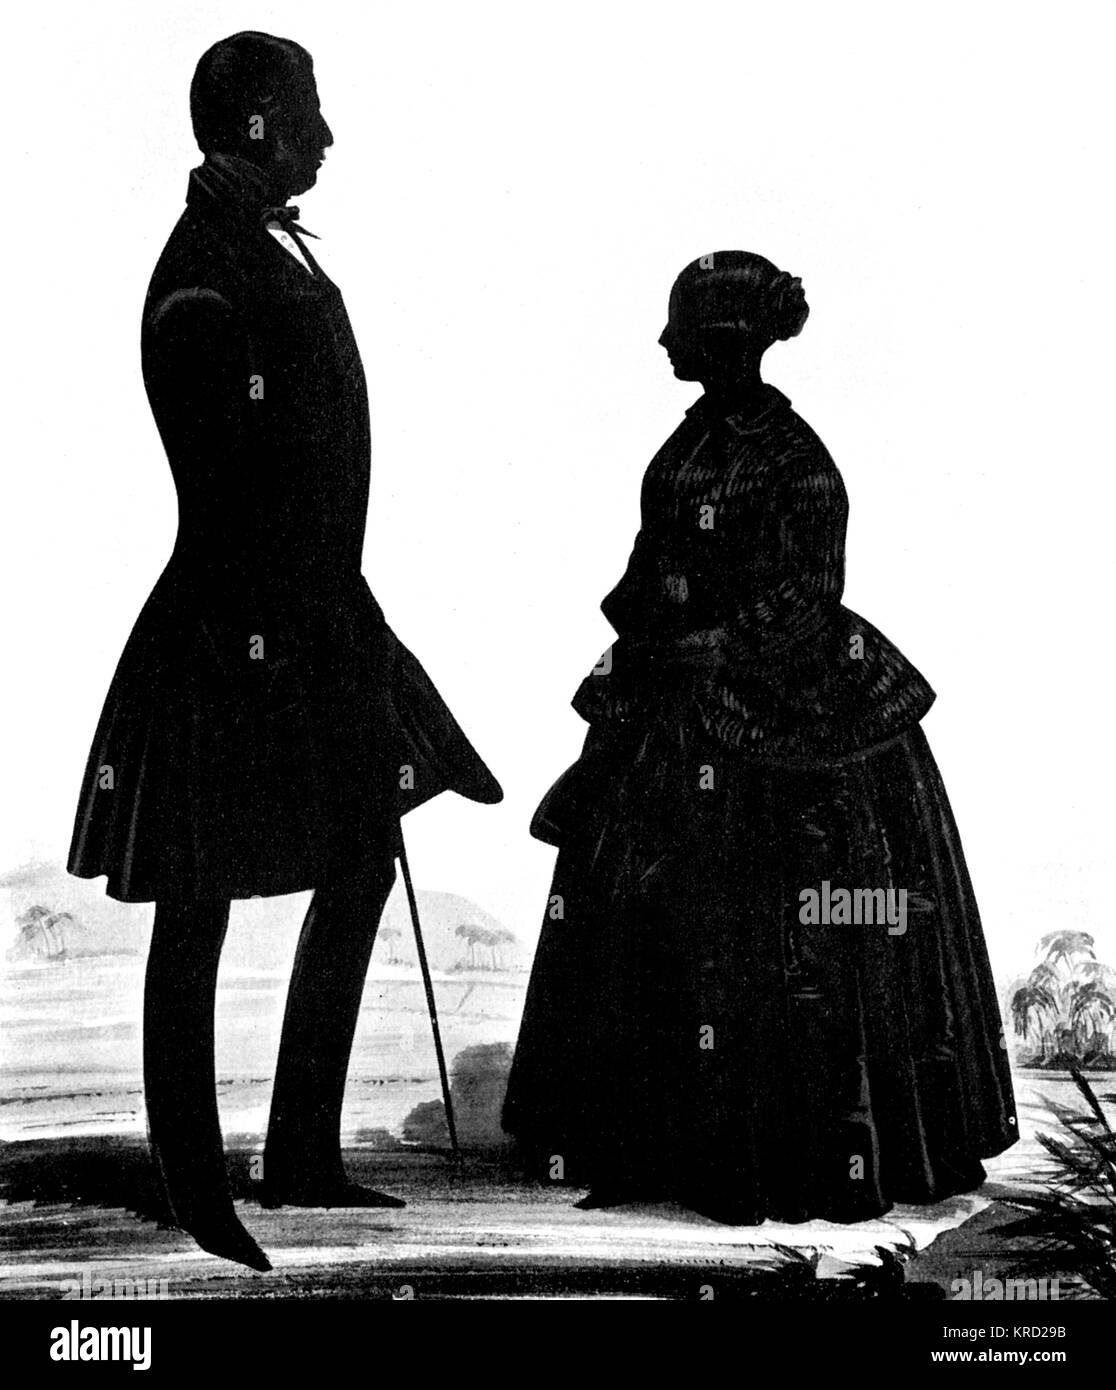 Una silueta retrato de la reina Victoria con su Primer Ministro, Lord Melbourne, probablemente cortado por Atkinson de Windsor y pencilled con oro. Fecha: c.1840 Foto de stock